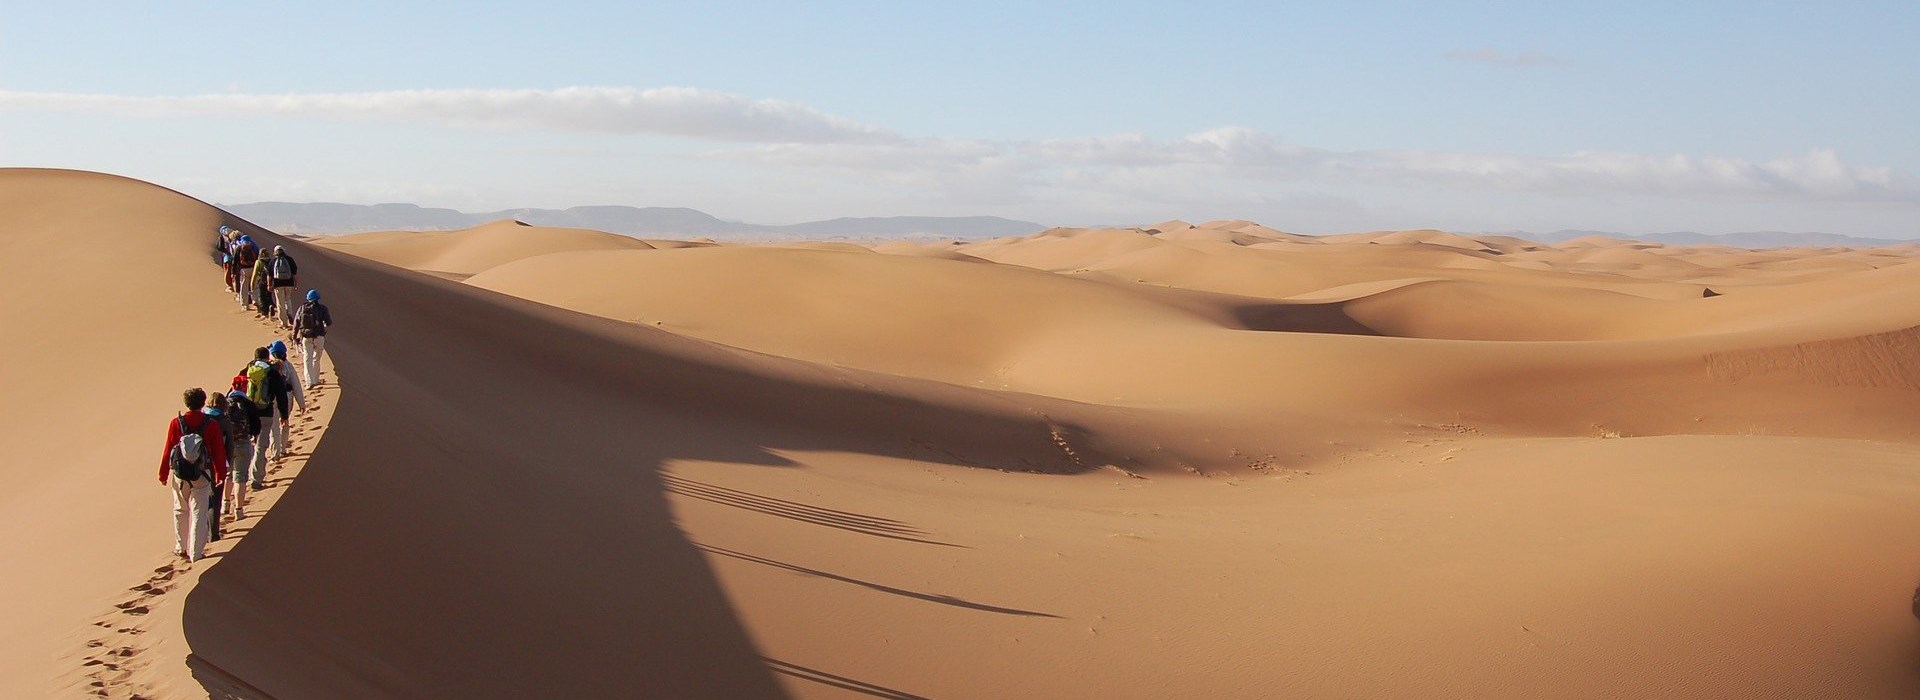 Circuit Tunisie - Vous reprendrez bien un peu de désert?